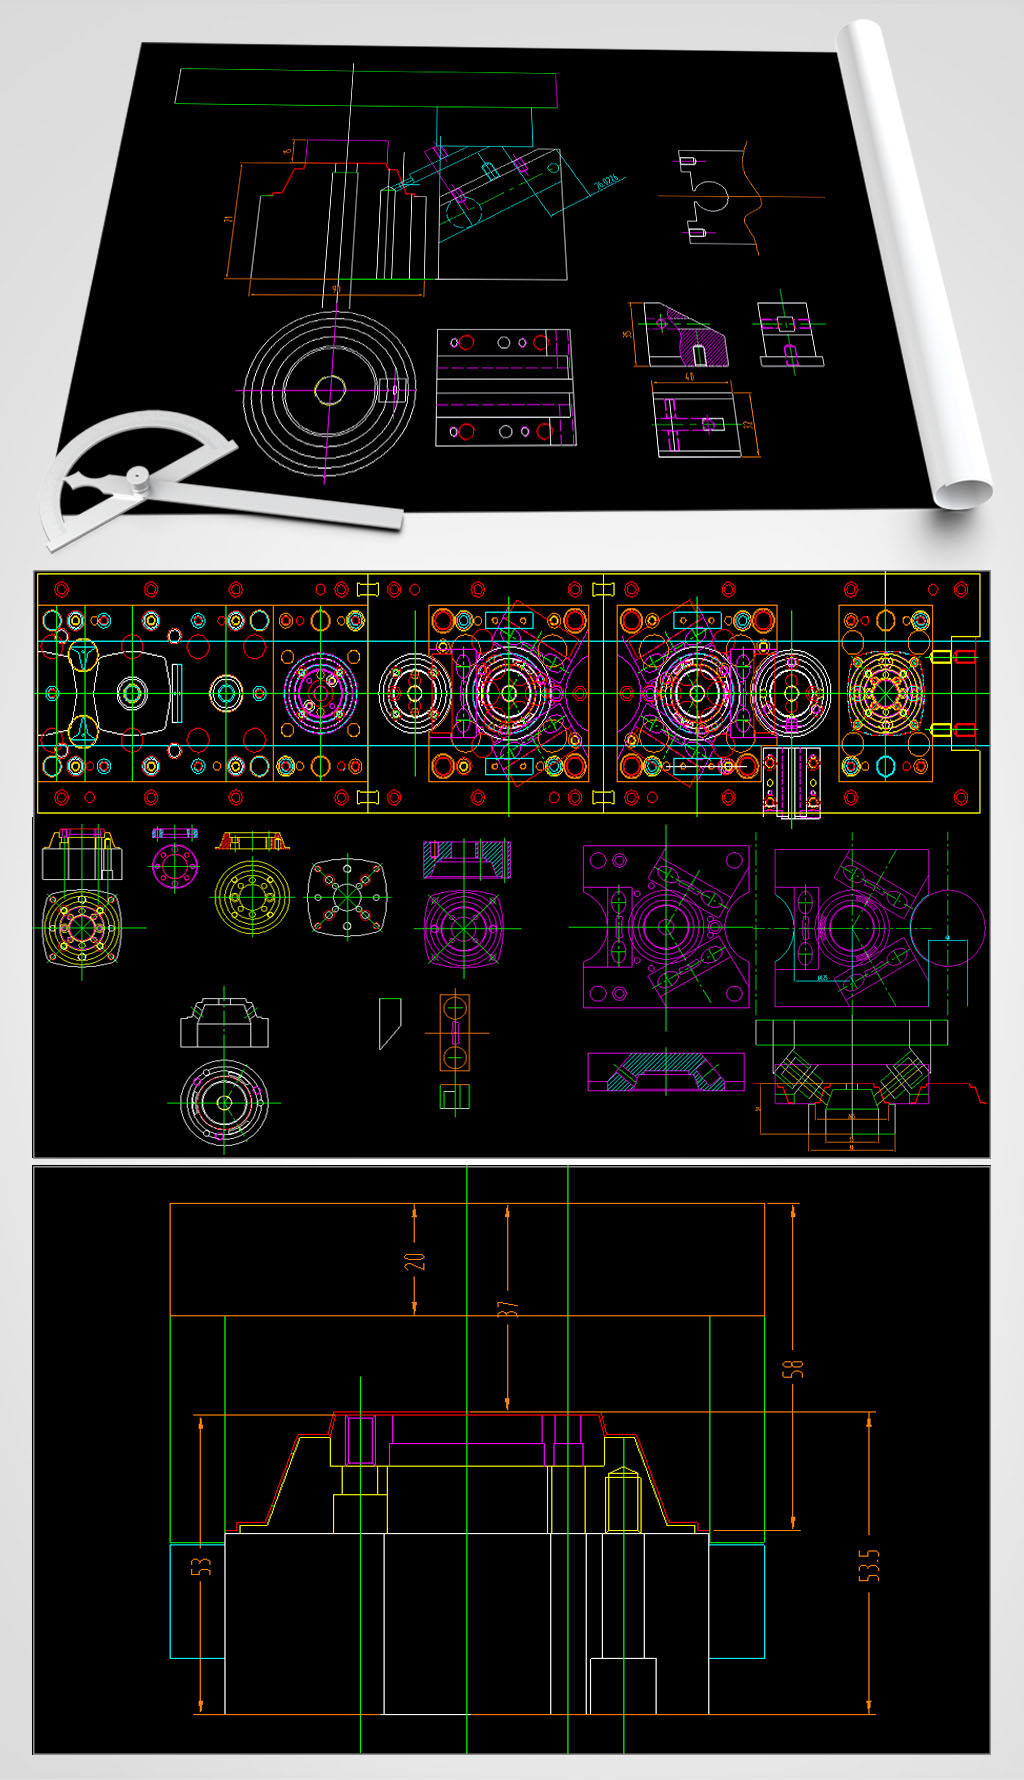 原创扬声器模具CAD平面设计图-版权可商用